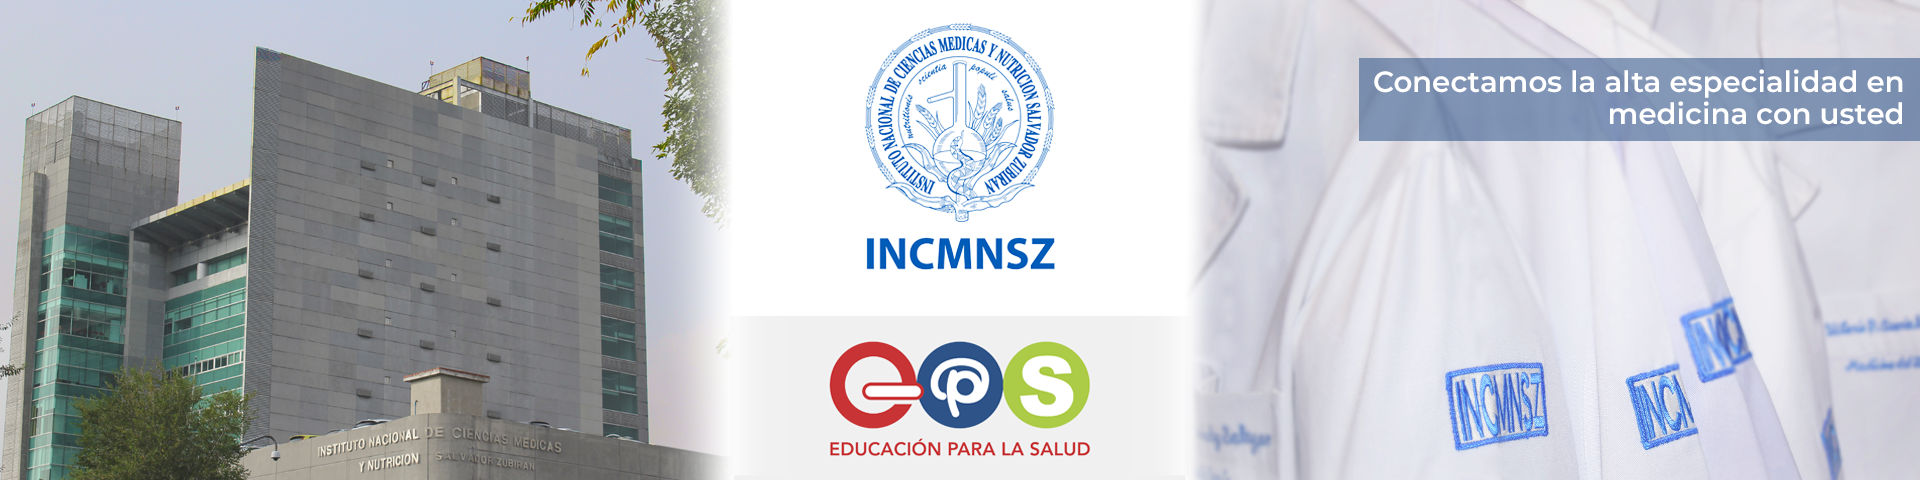 INCMNSZ | Educación para la Salud